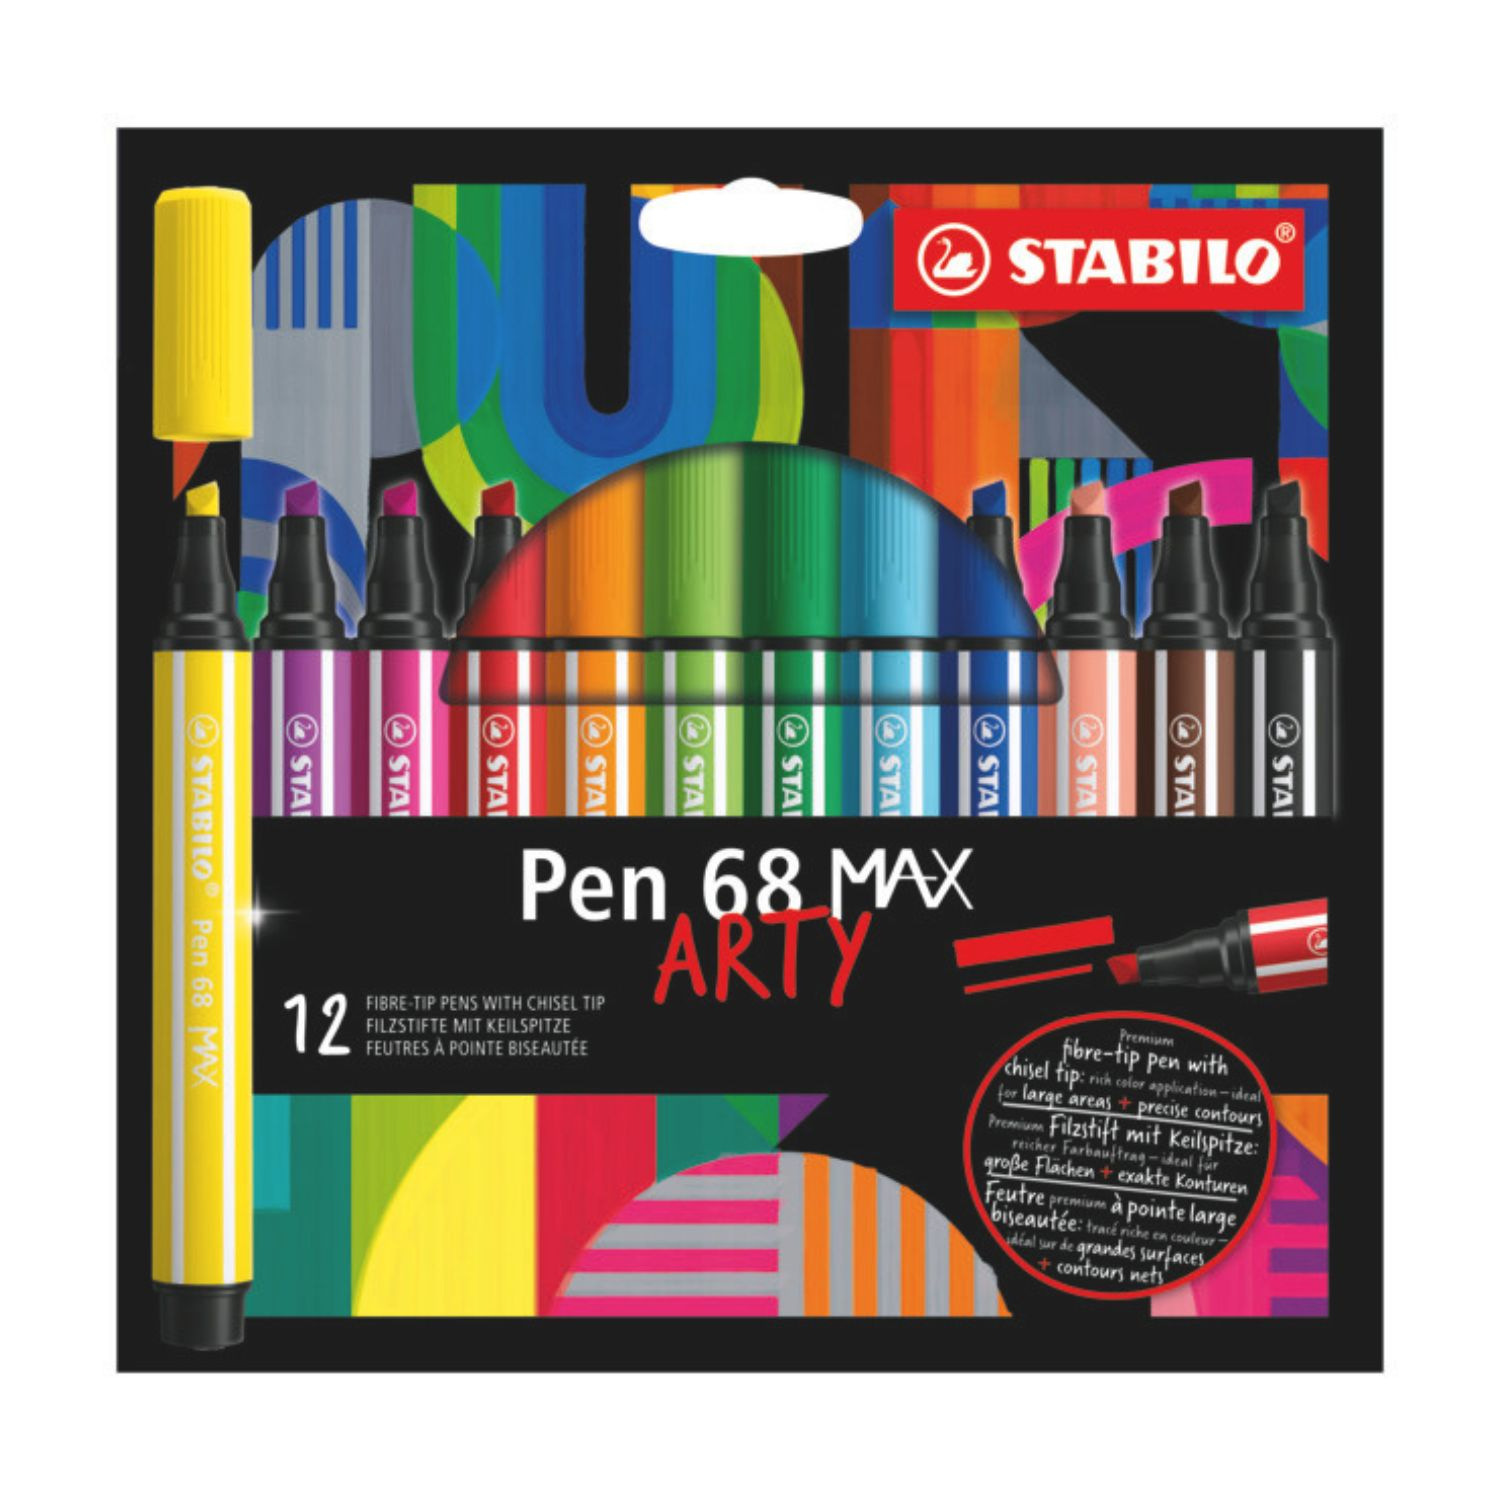 Feutre de coloriage Pen 68 x12 STABILO : l'étui carton de 12